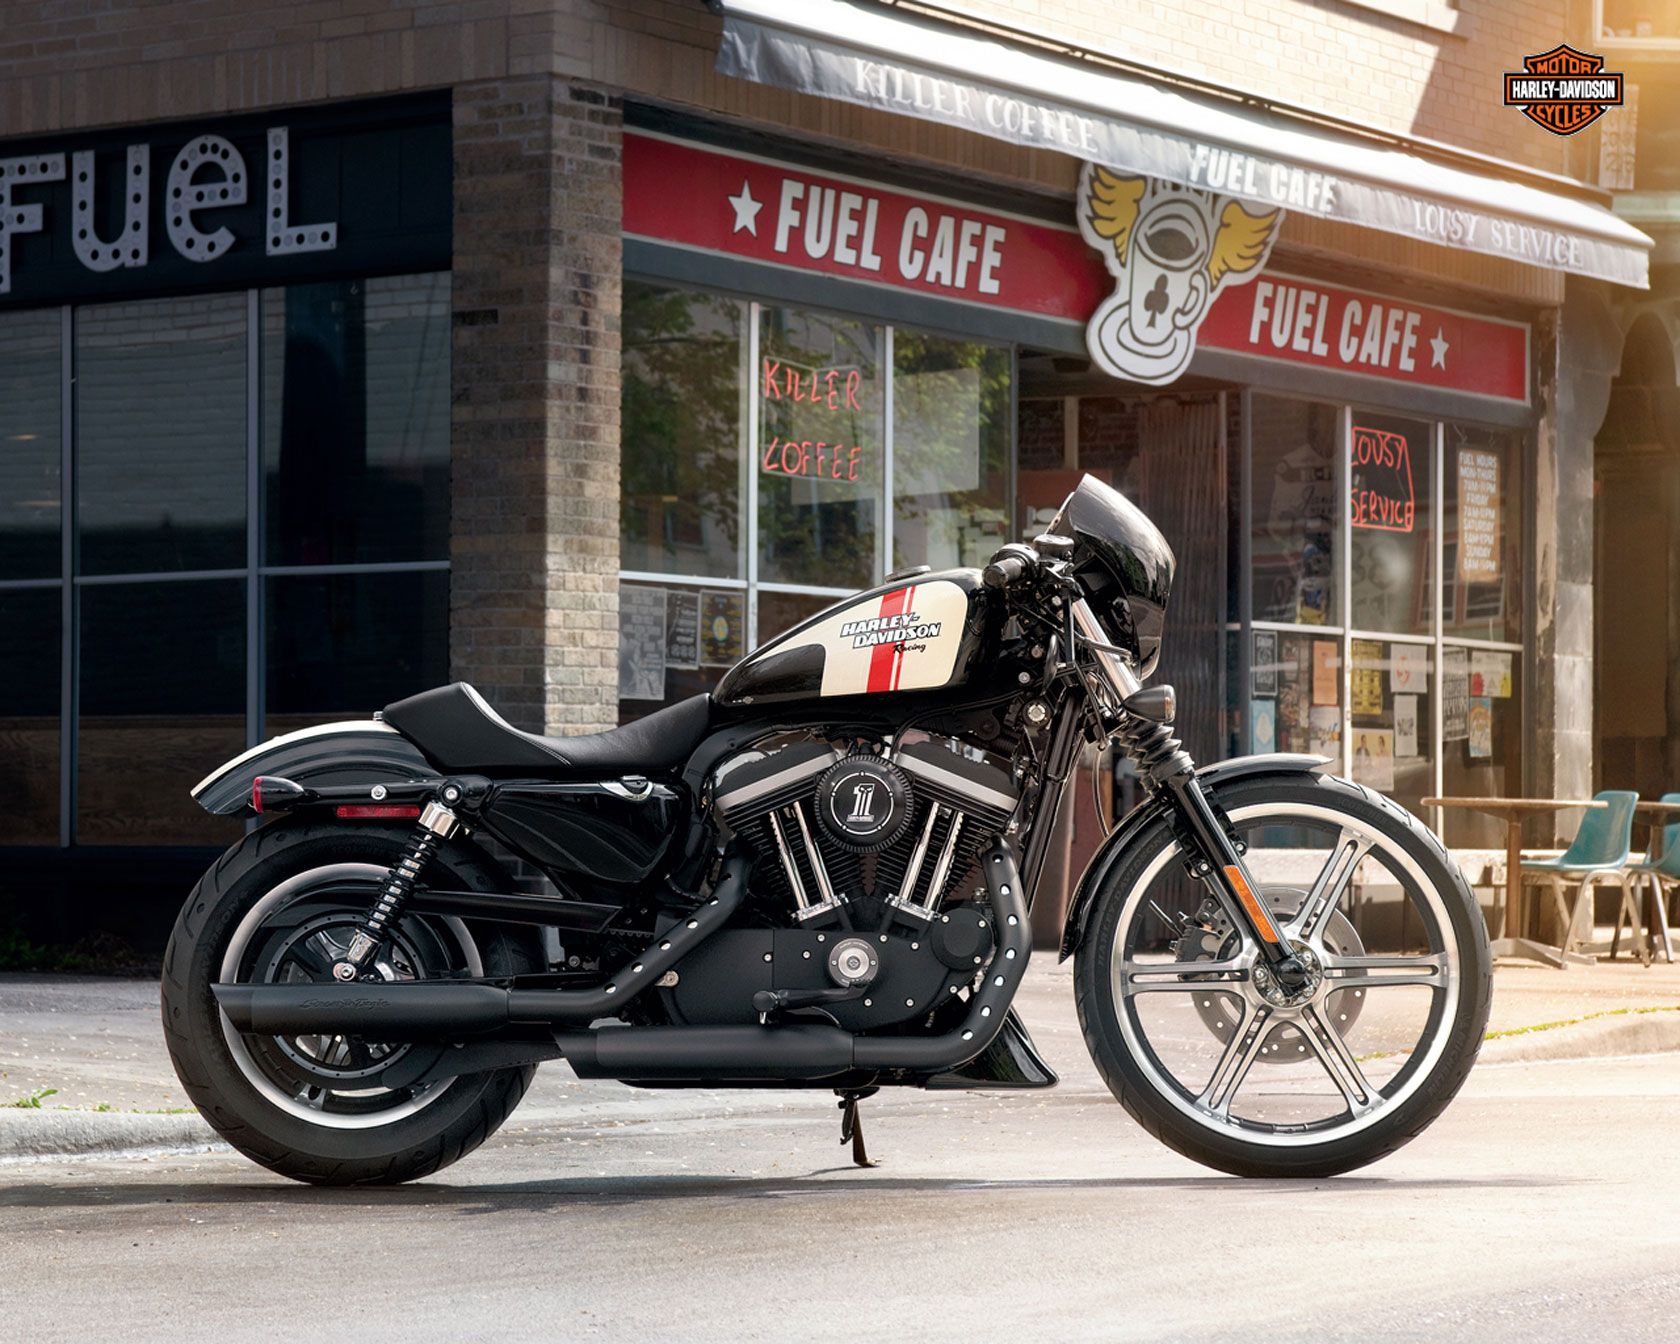 Wallpaper Harley Davidson Iron